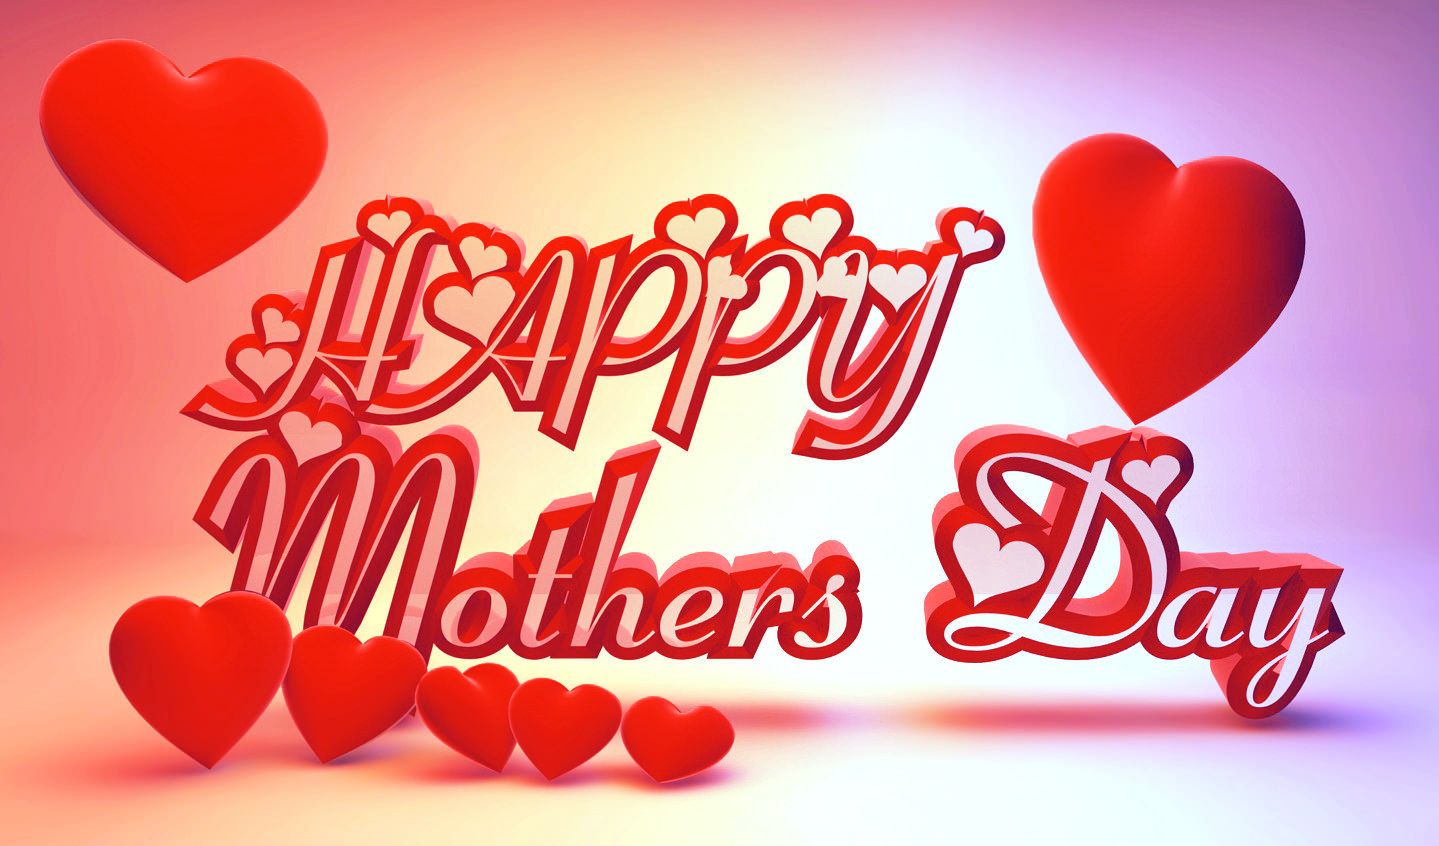 Happy Mothers Day Image 2019 Mothers Day Image Mothers